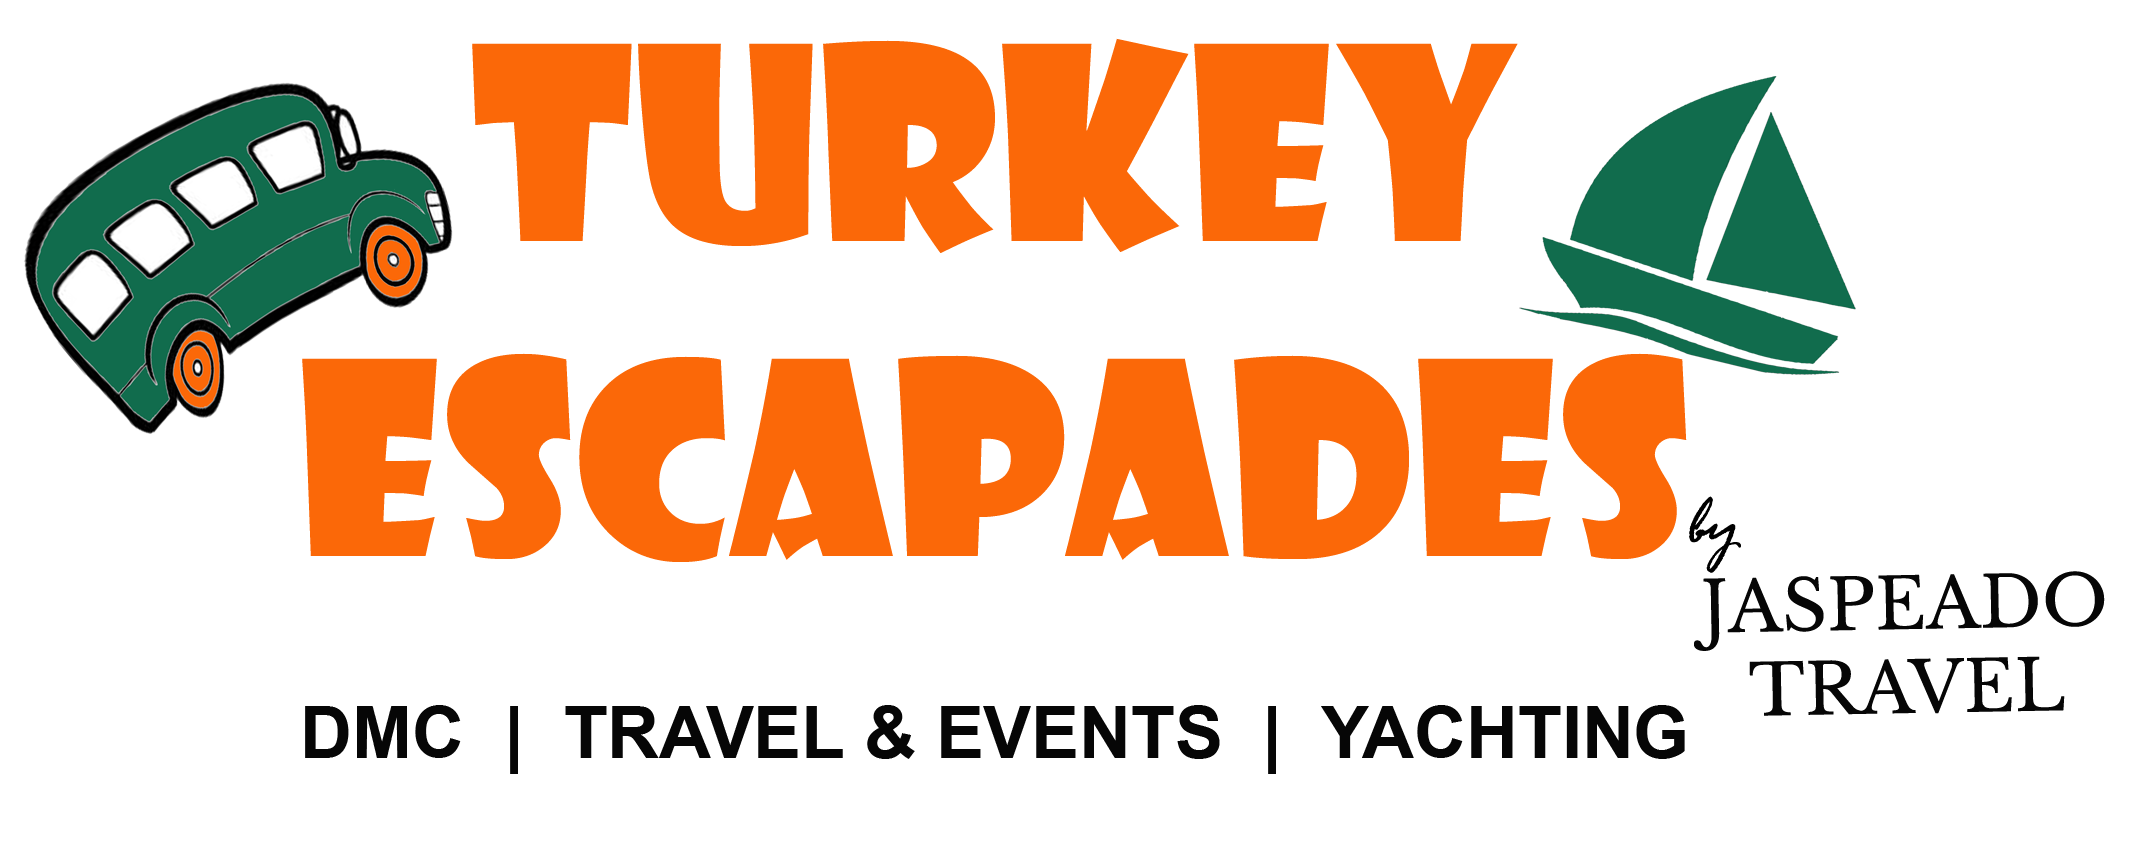 Turkey Escapades | Экскурсии по России - Turkey Escapades Экскурсии по России